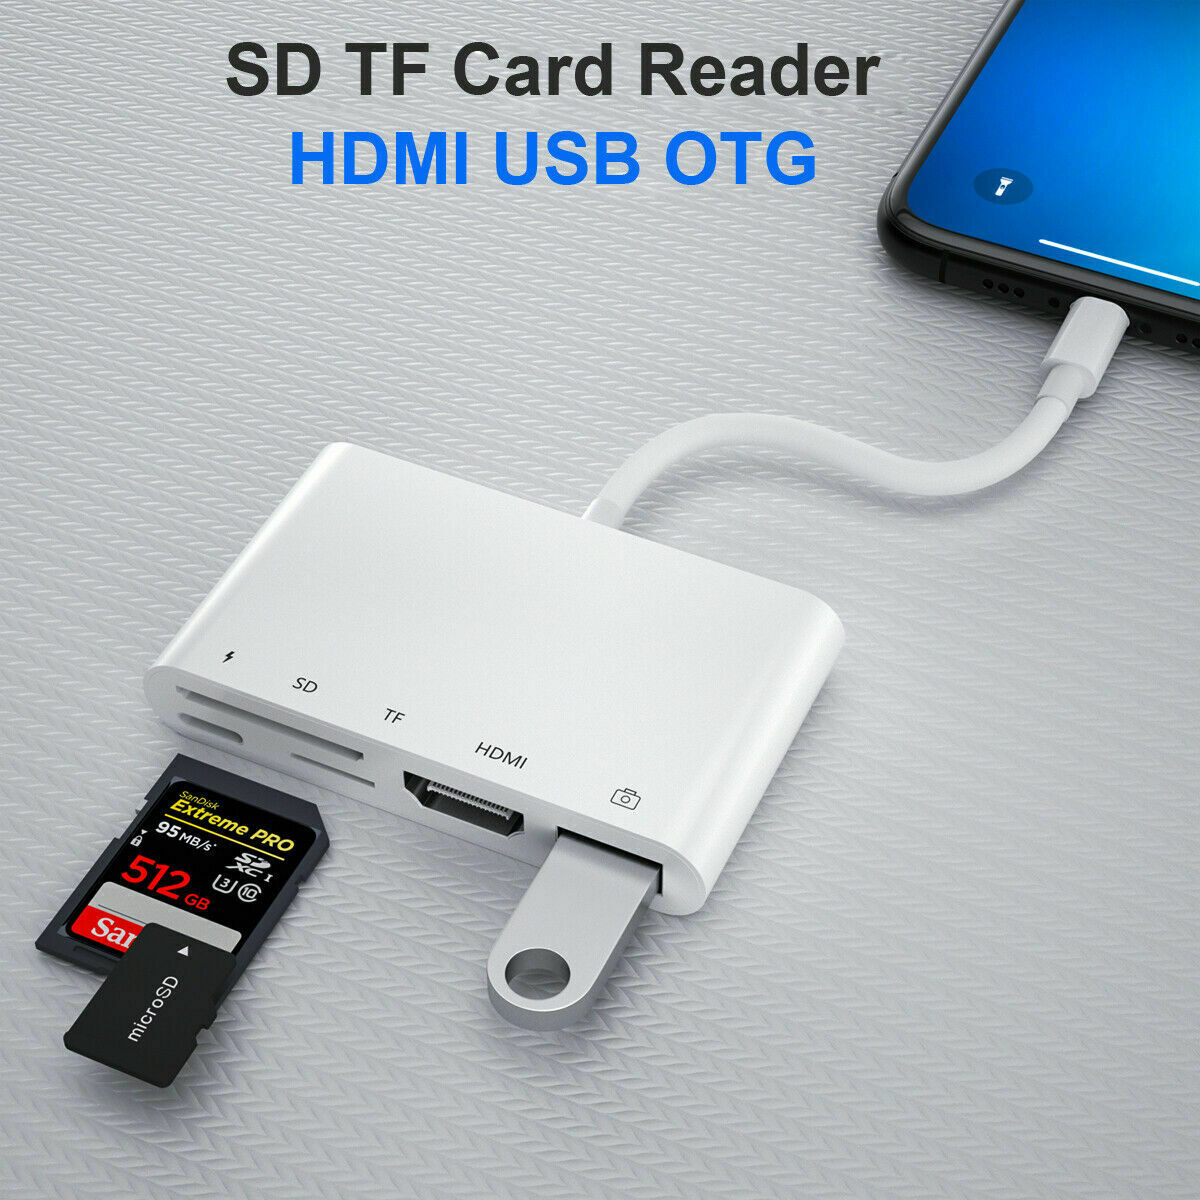 Lightning 5 in 1 OTG 1080P HDMI Cable USB SD TF Card Reader Digital AV TV Adapter